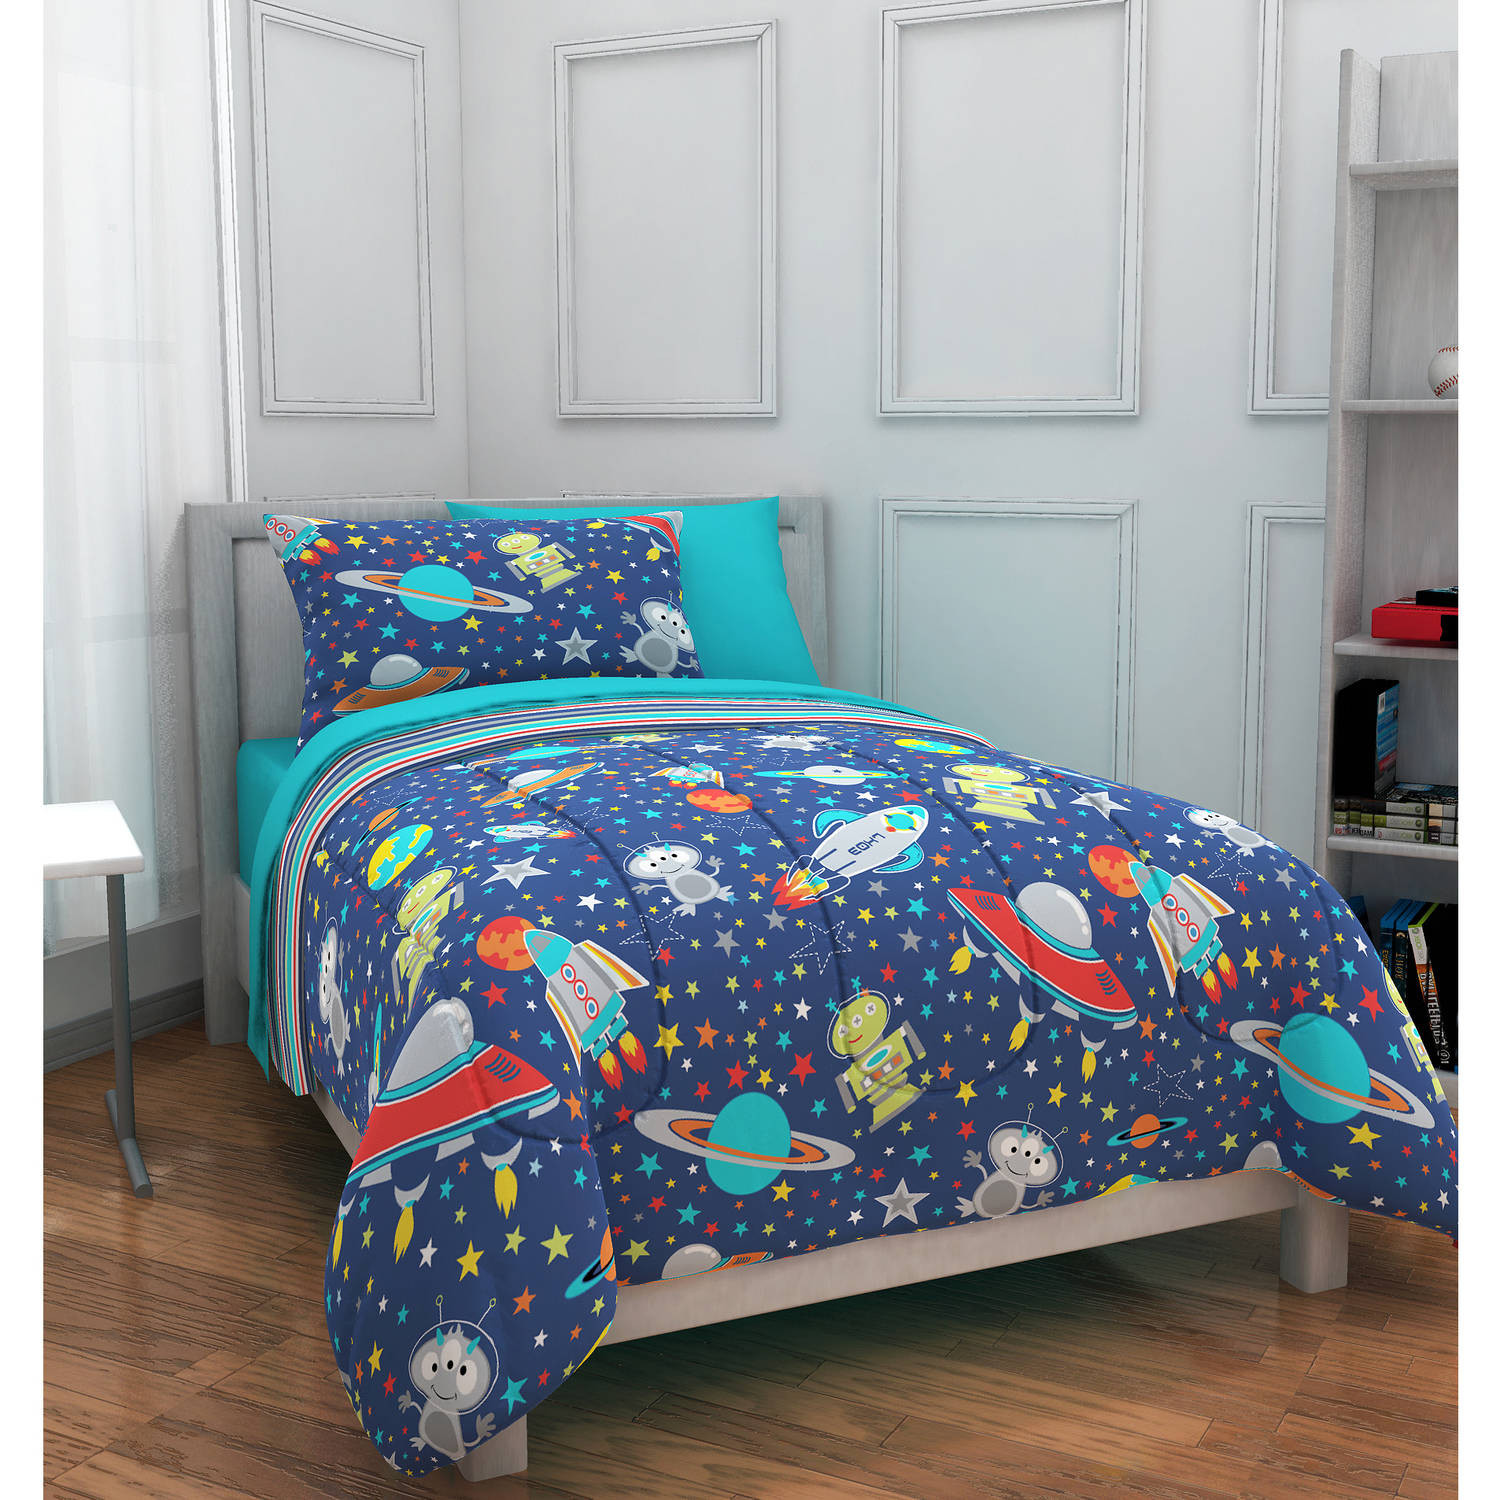 Walmart Bedroom Sets For Kids
 Mainstays Kids Outer Space Bed in a Bag Bedding Set